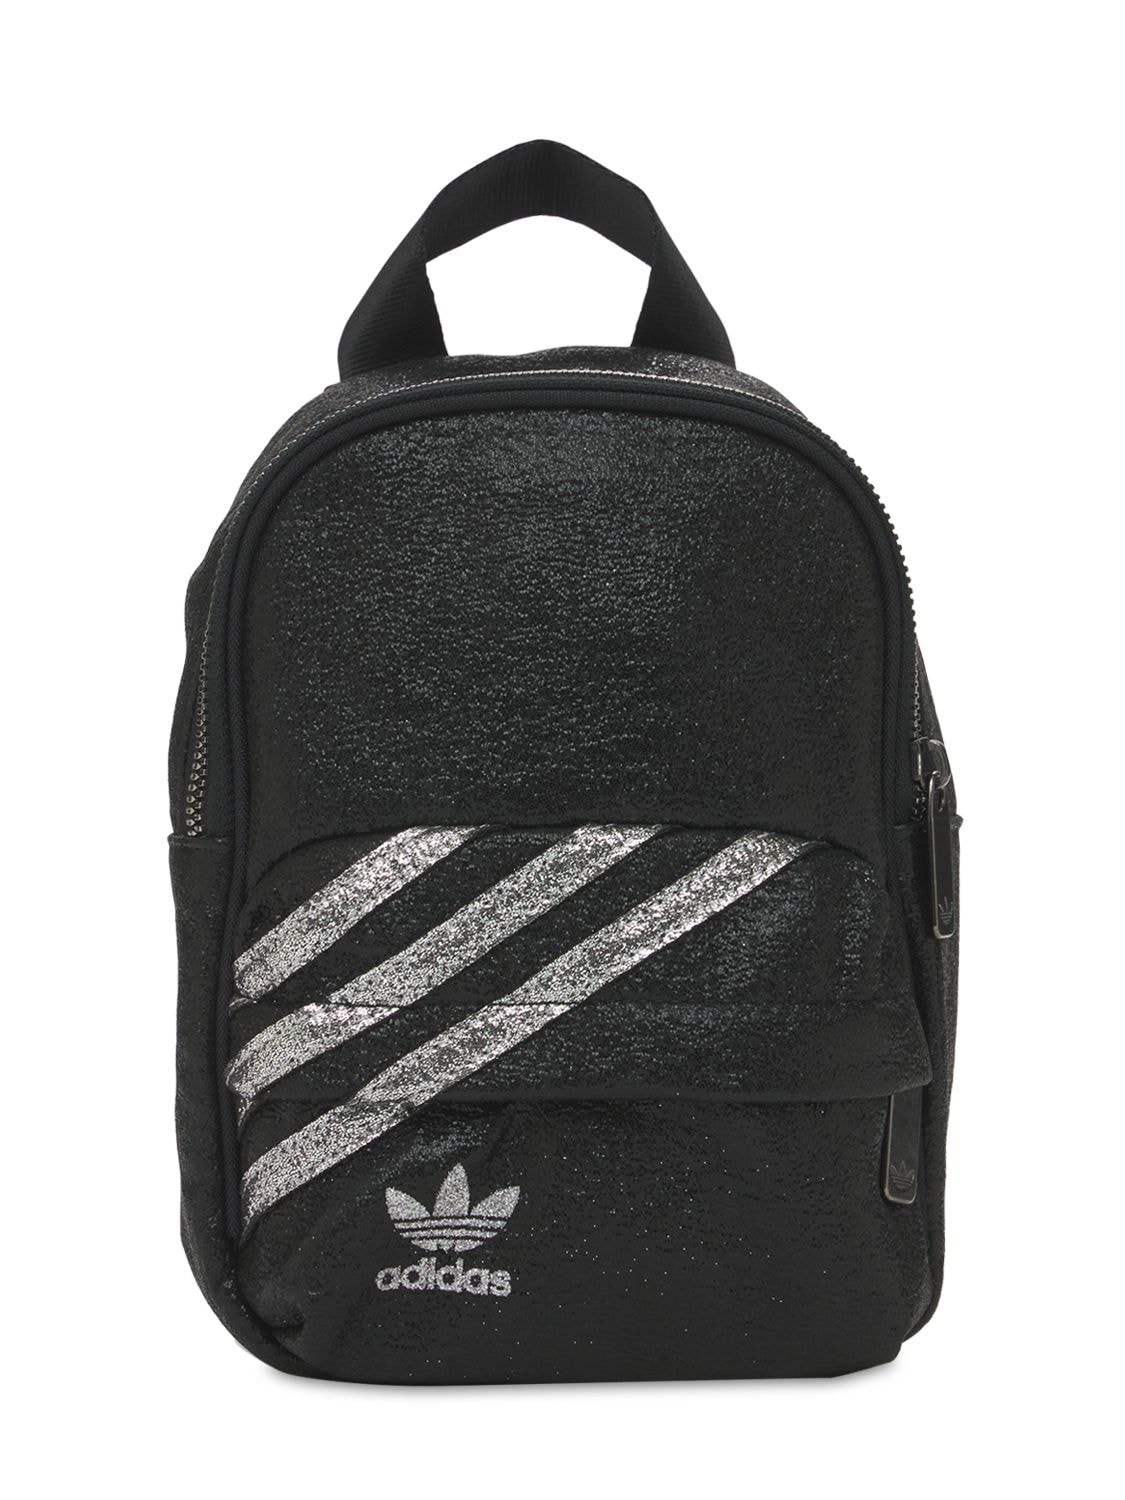 Adidas Originals Backpacks BP MINI BACKPACK